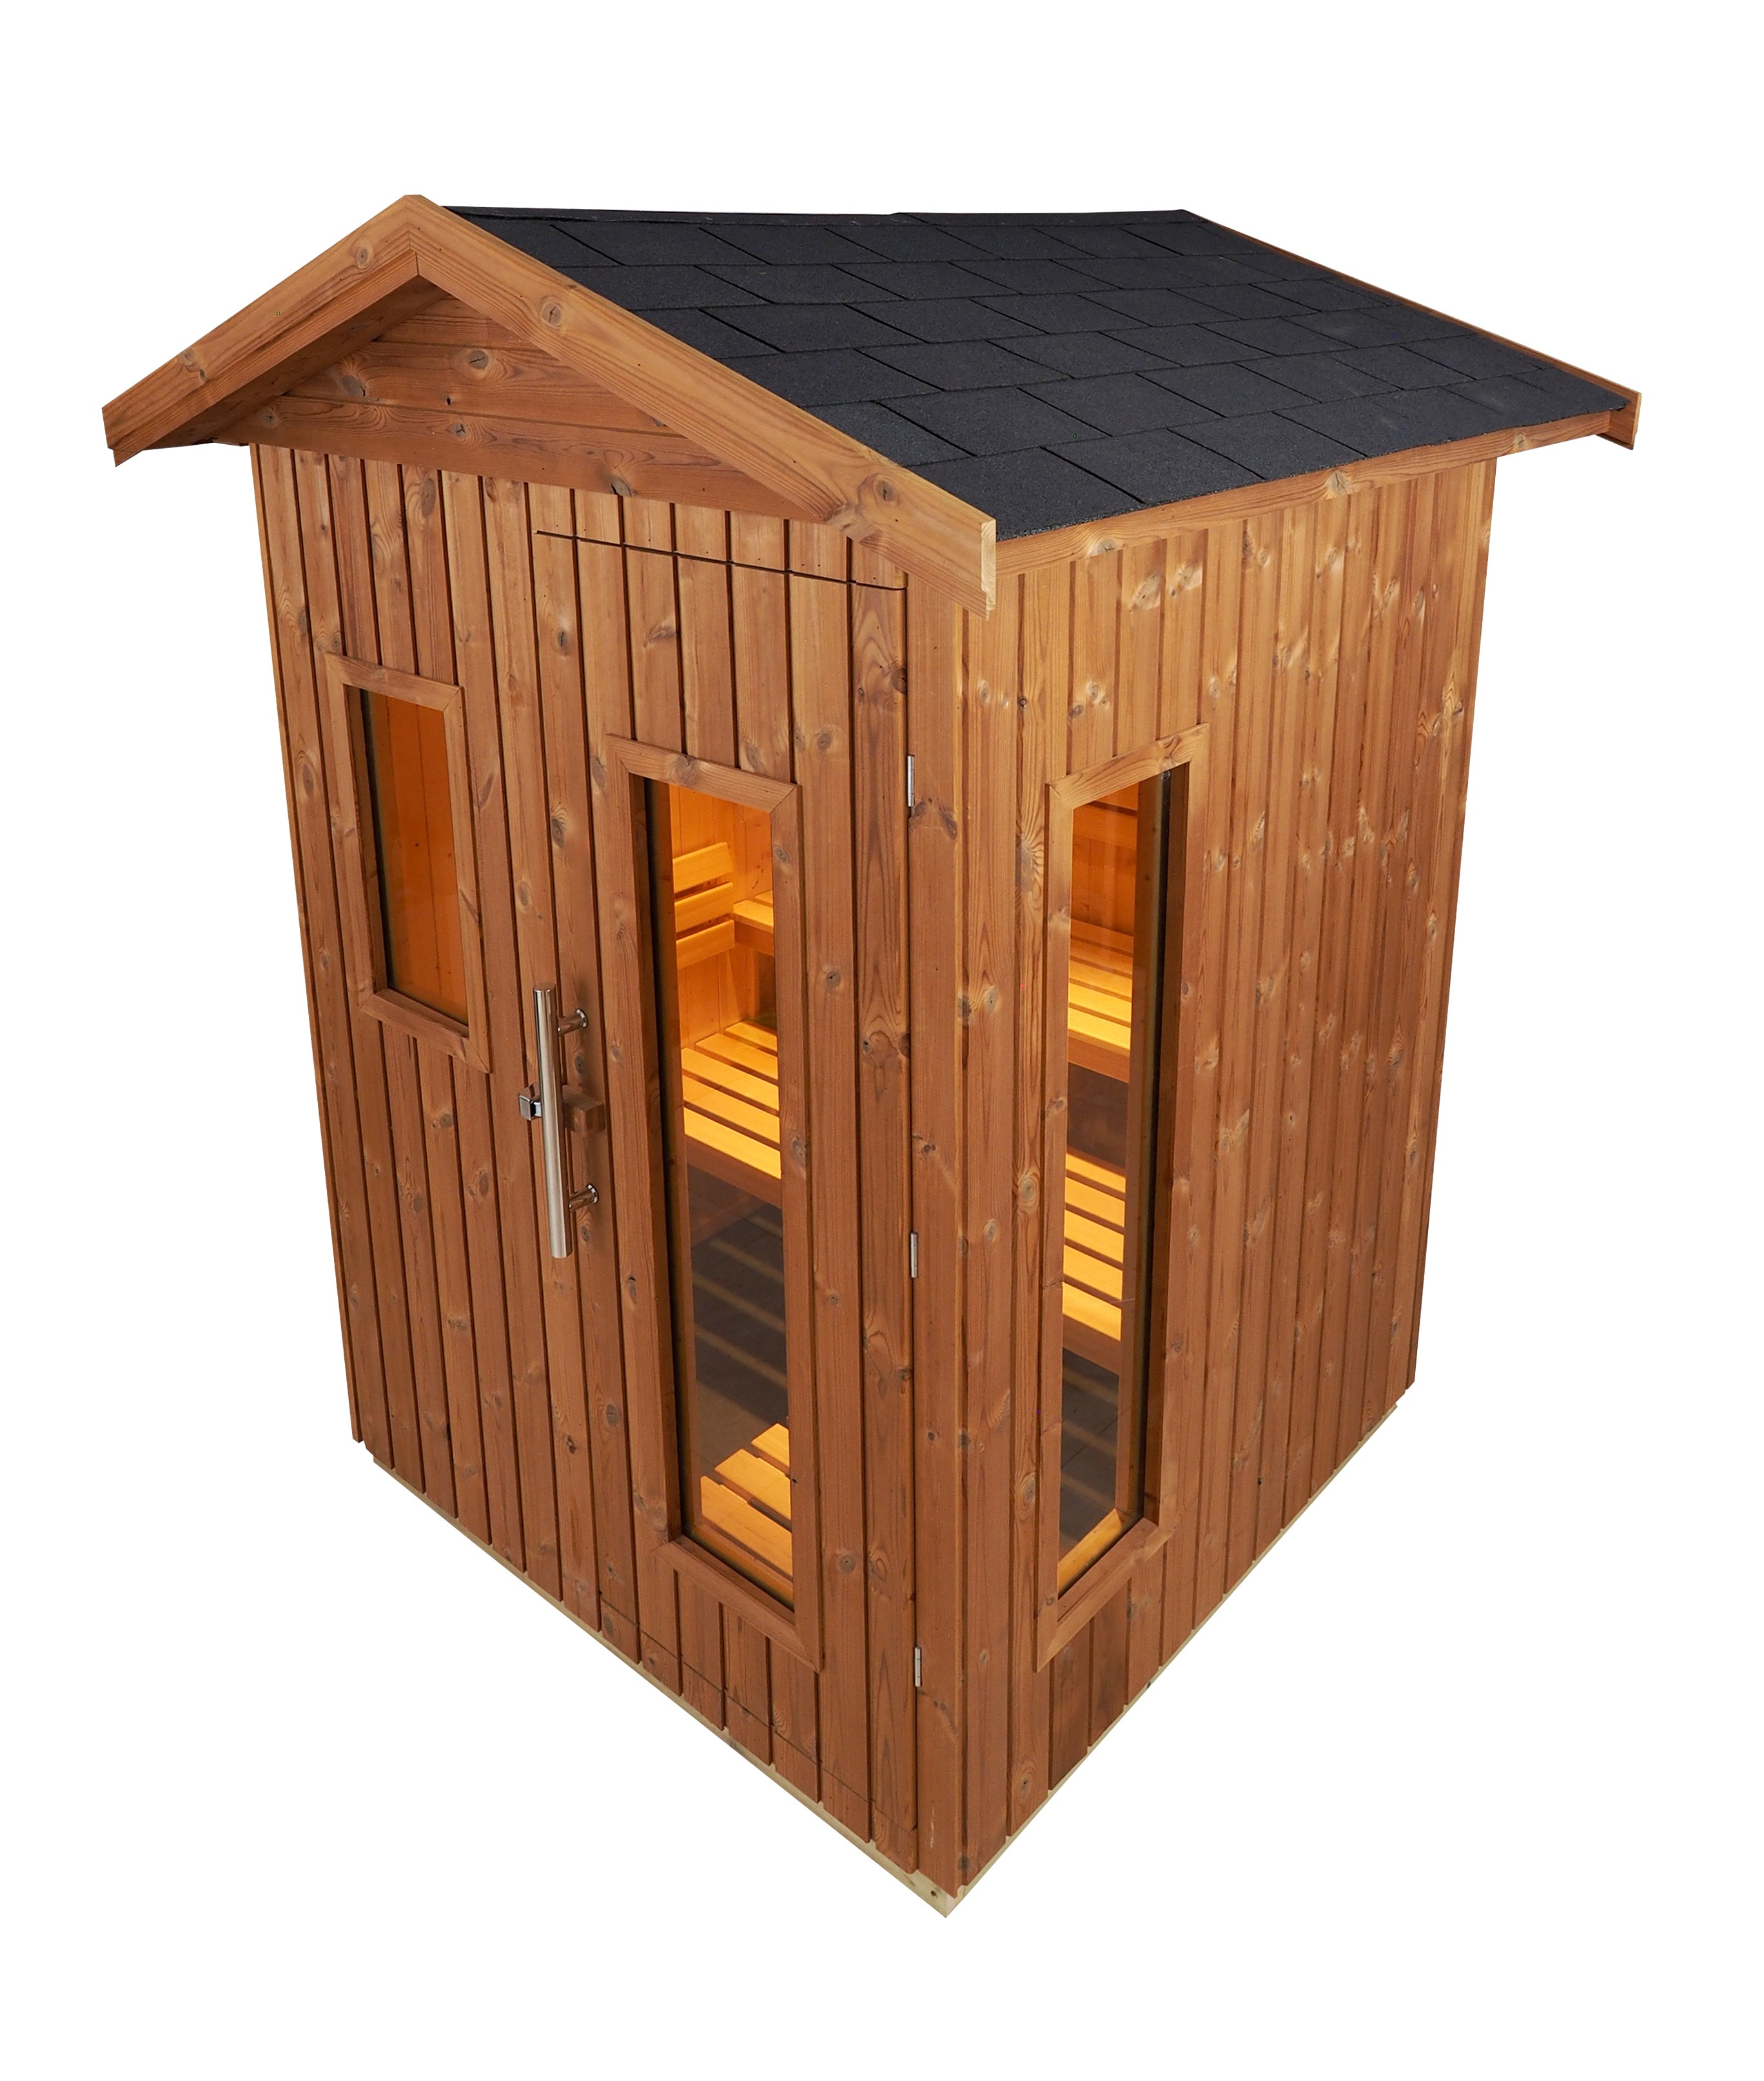 Cabine de sauna Oceanic tradicional finlandesa de exterior E3030 para 7 pessoas